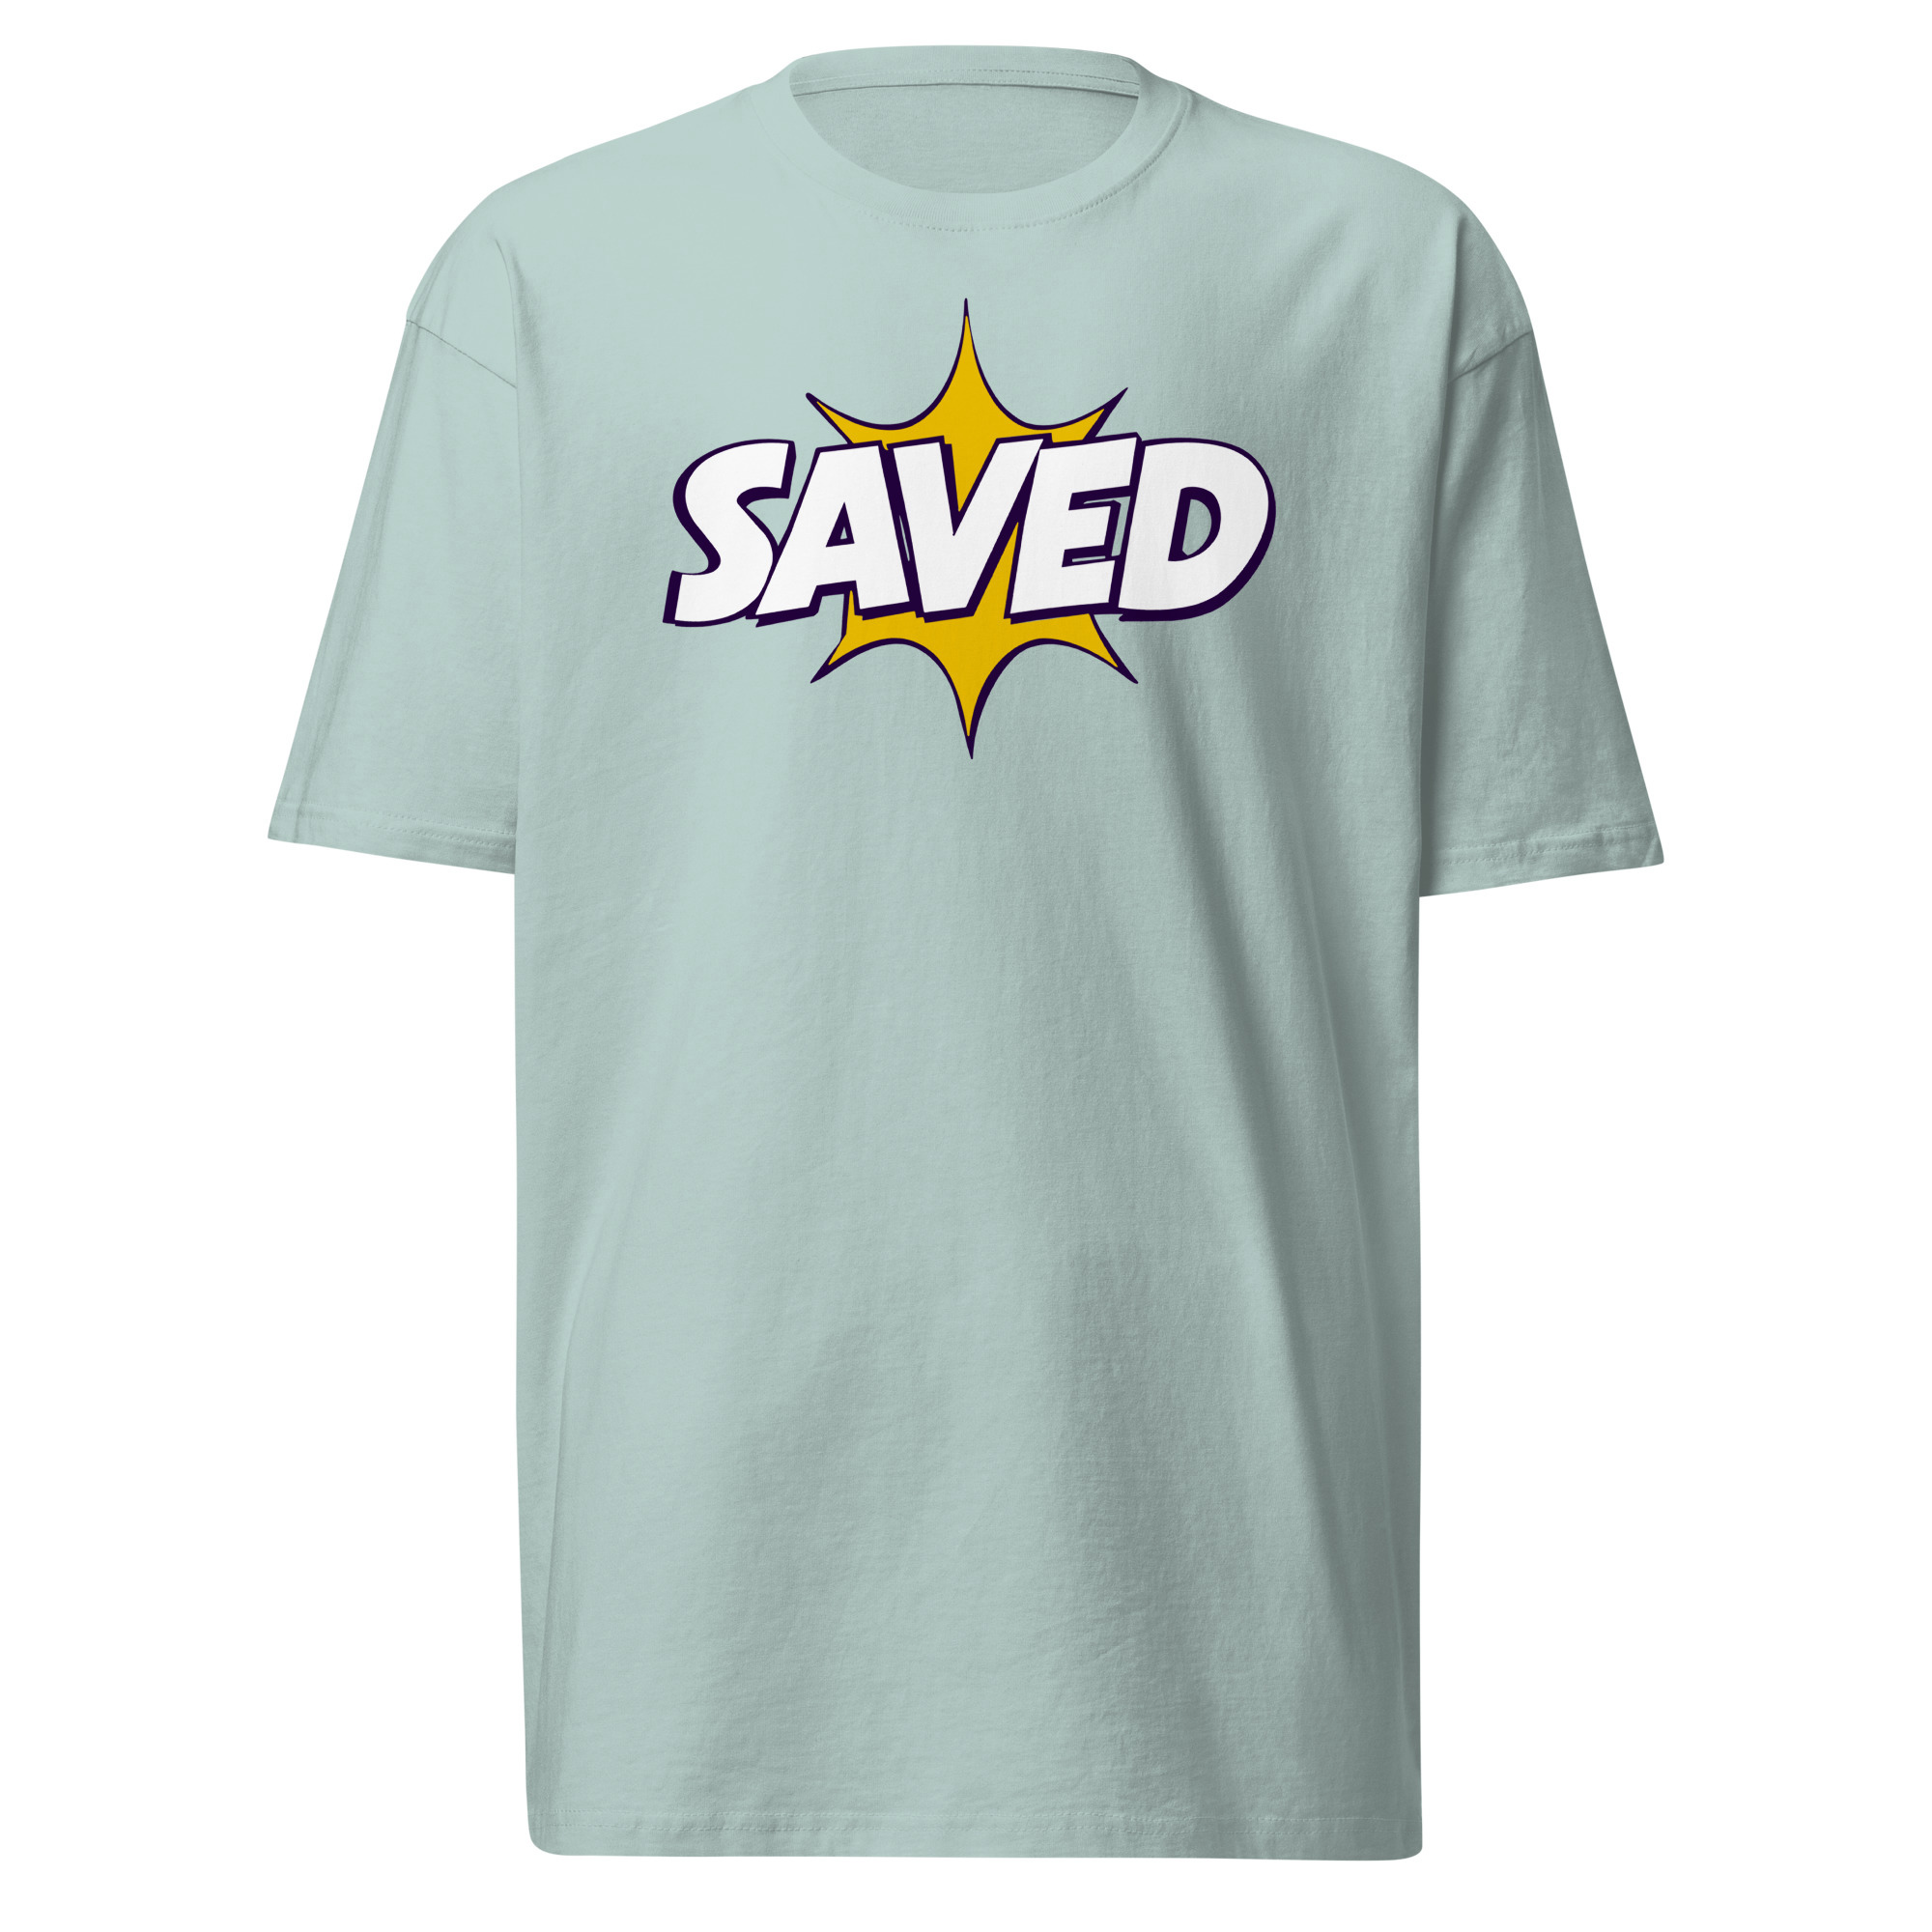 Saved T-Shirt - Agave / M